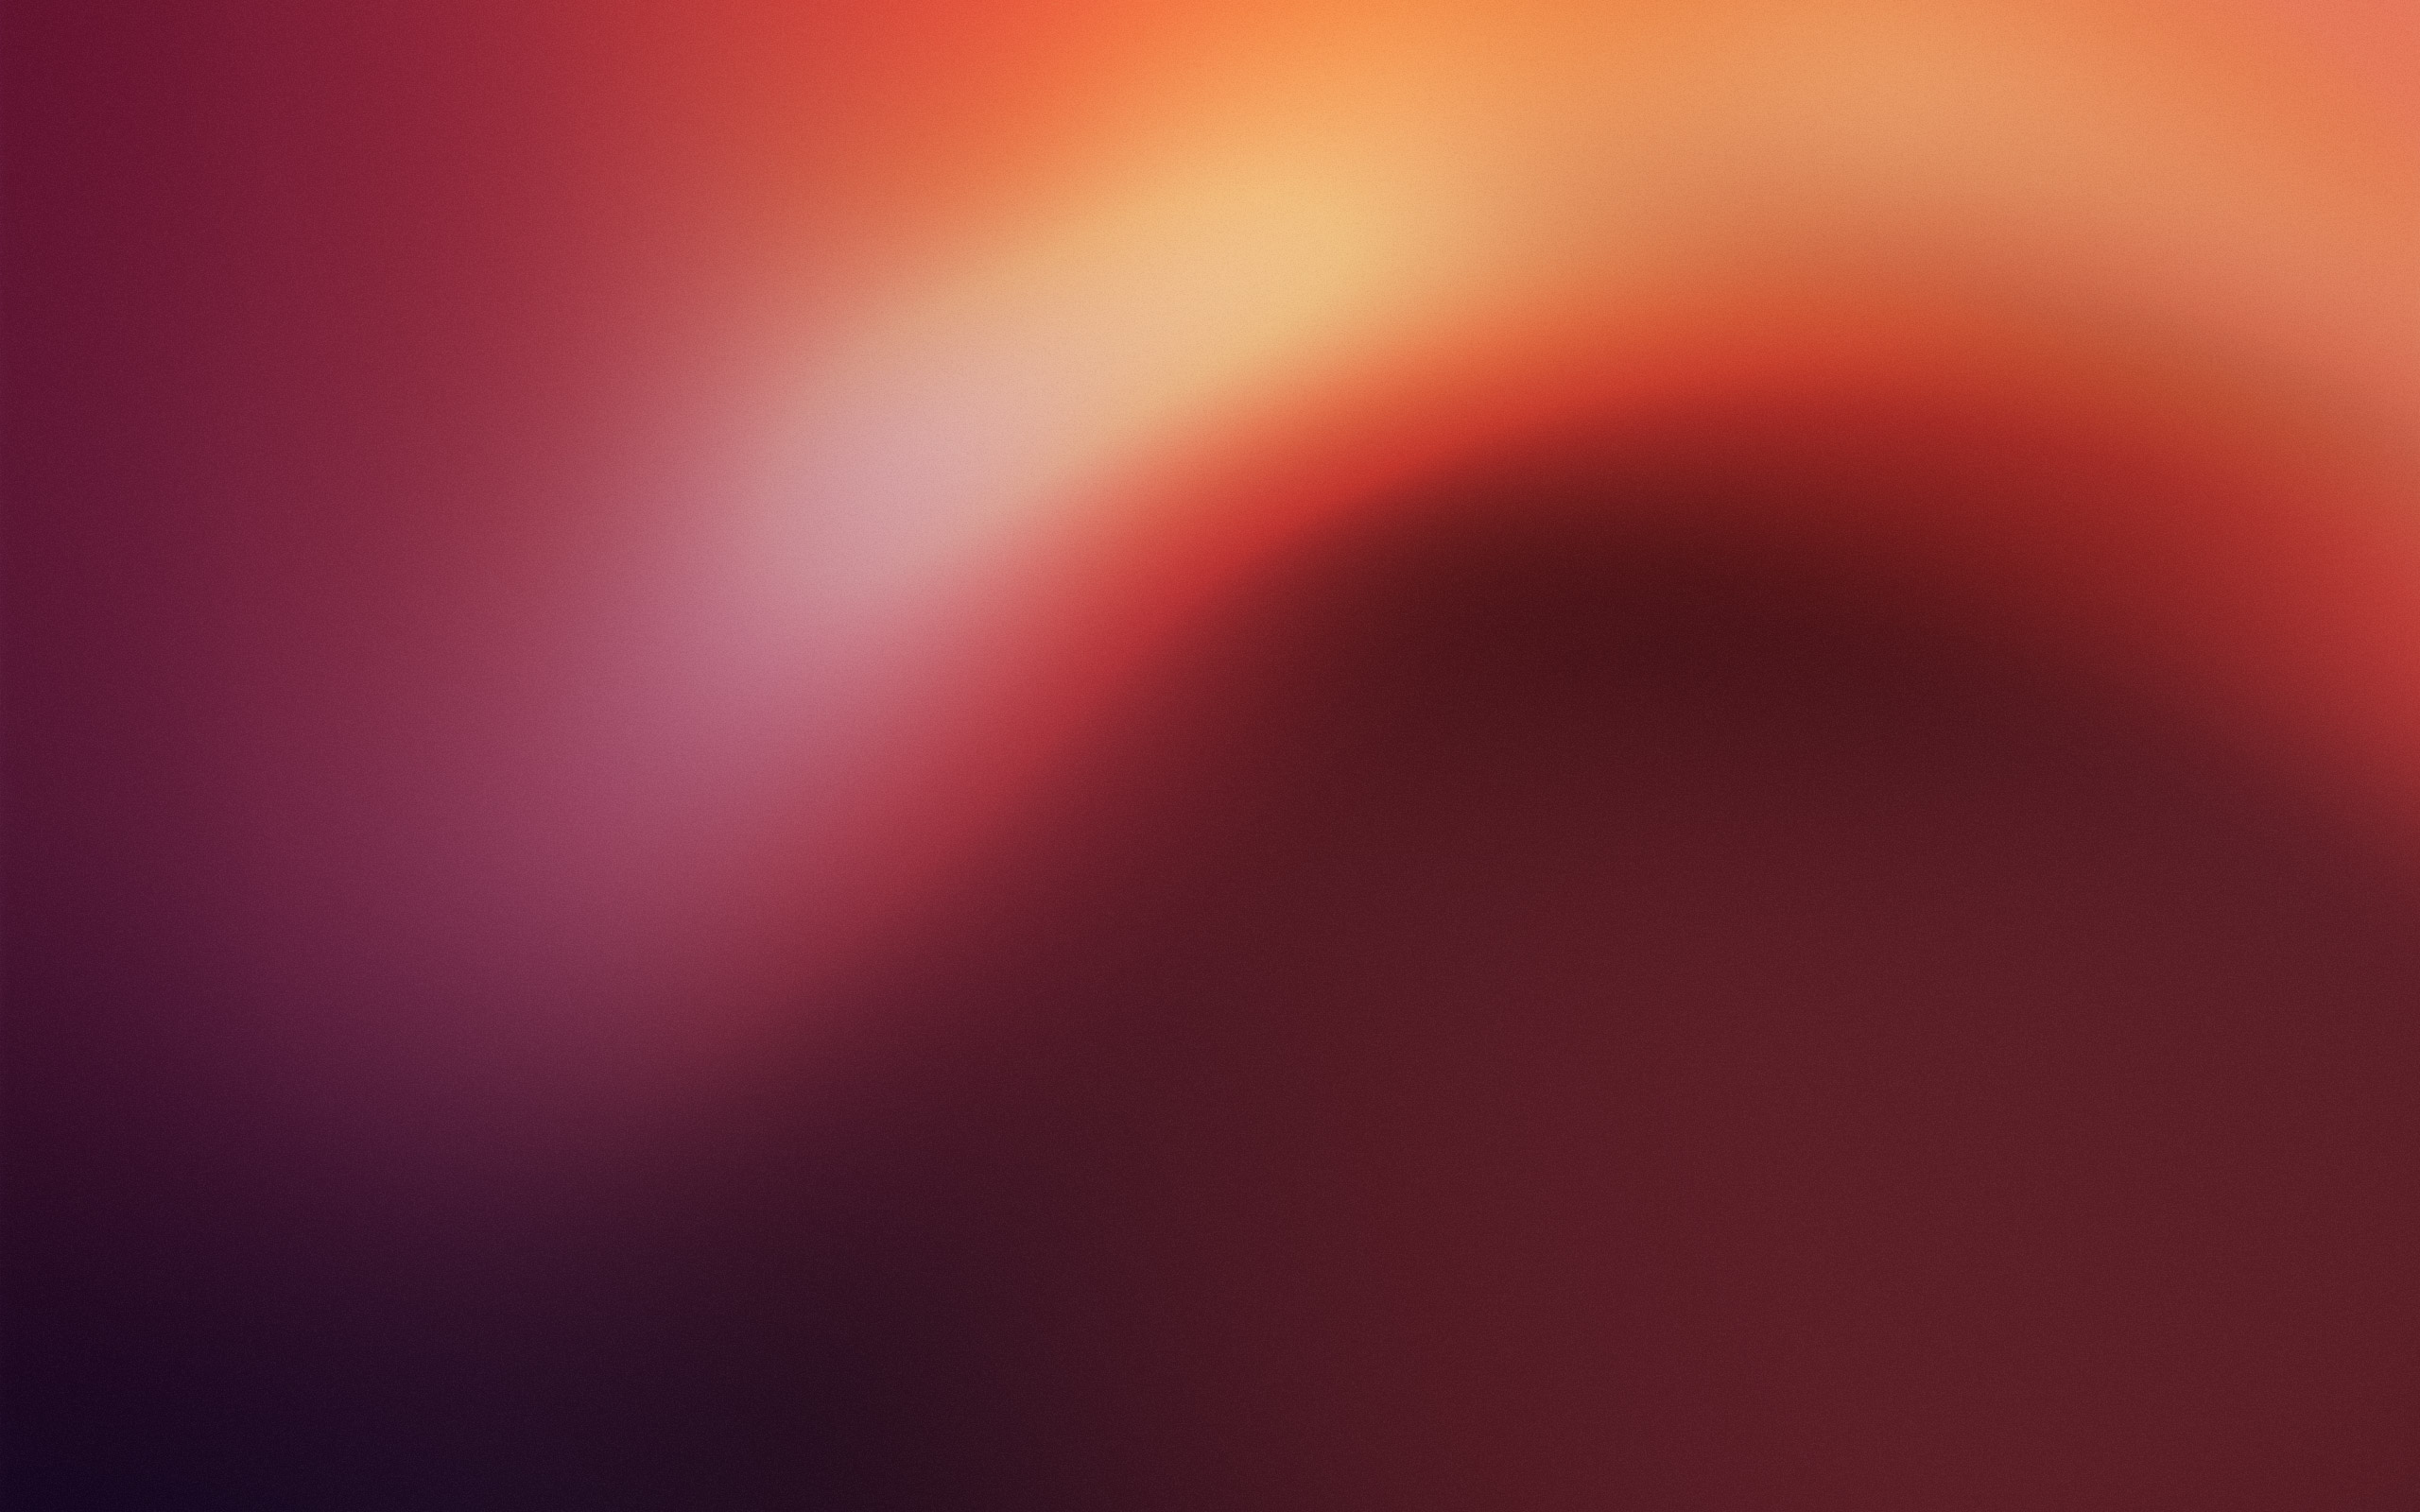 ubuntu wallpaper,red,sky,orange,pink,light